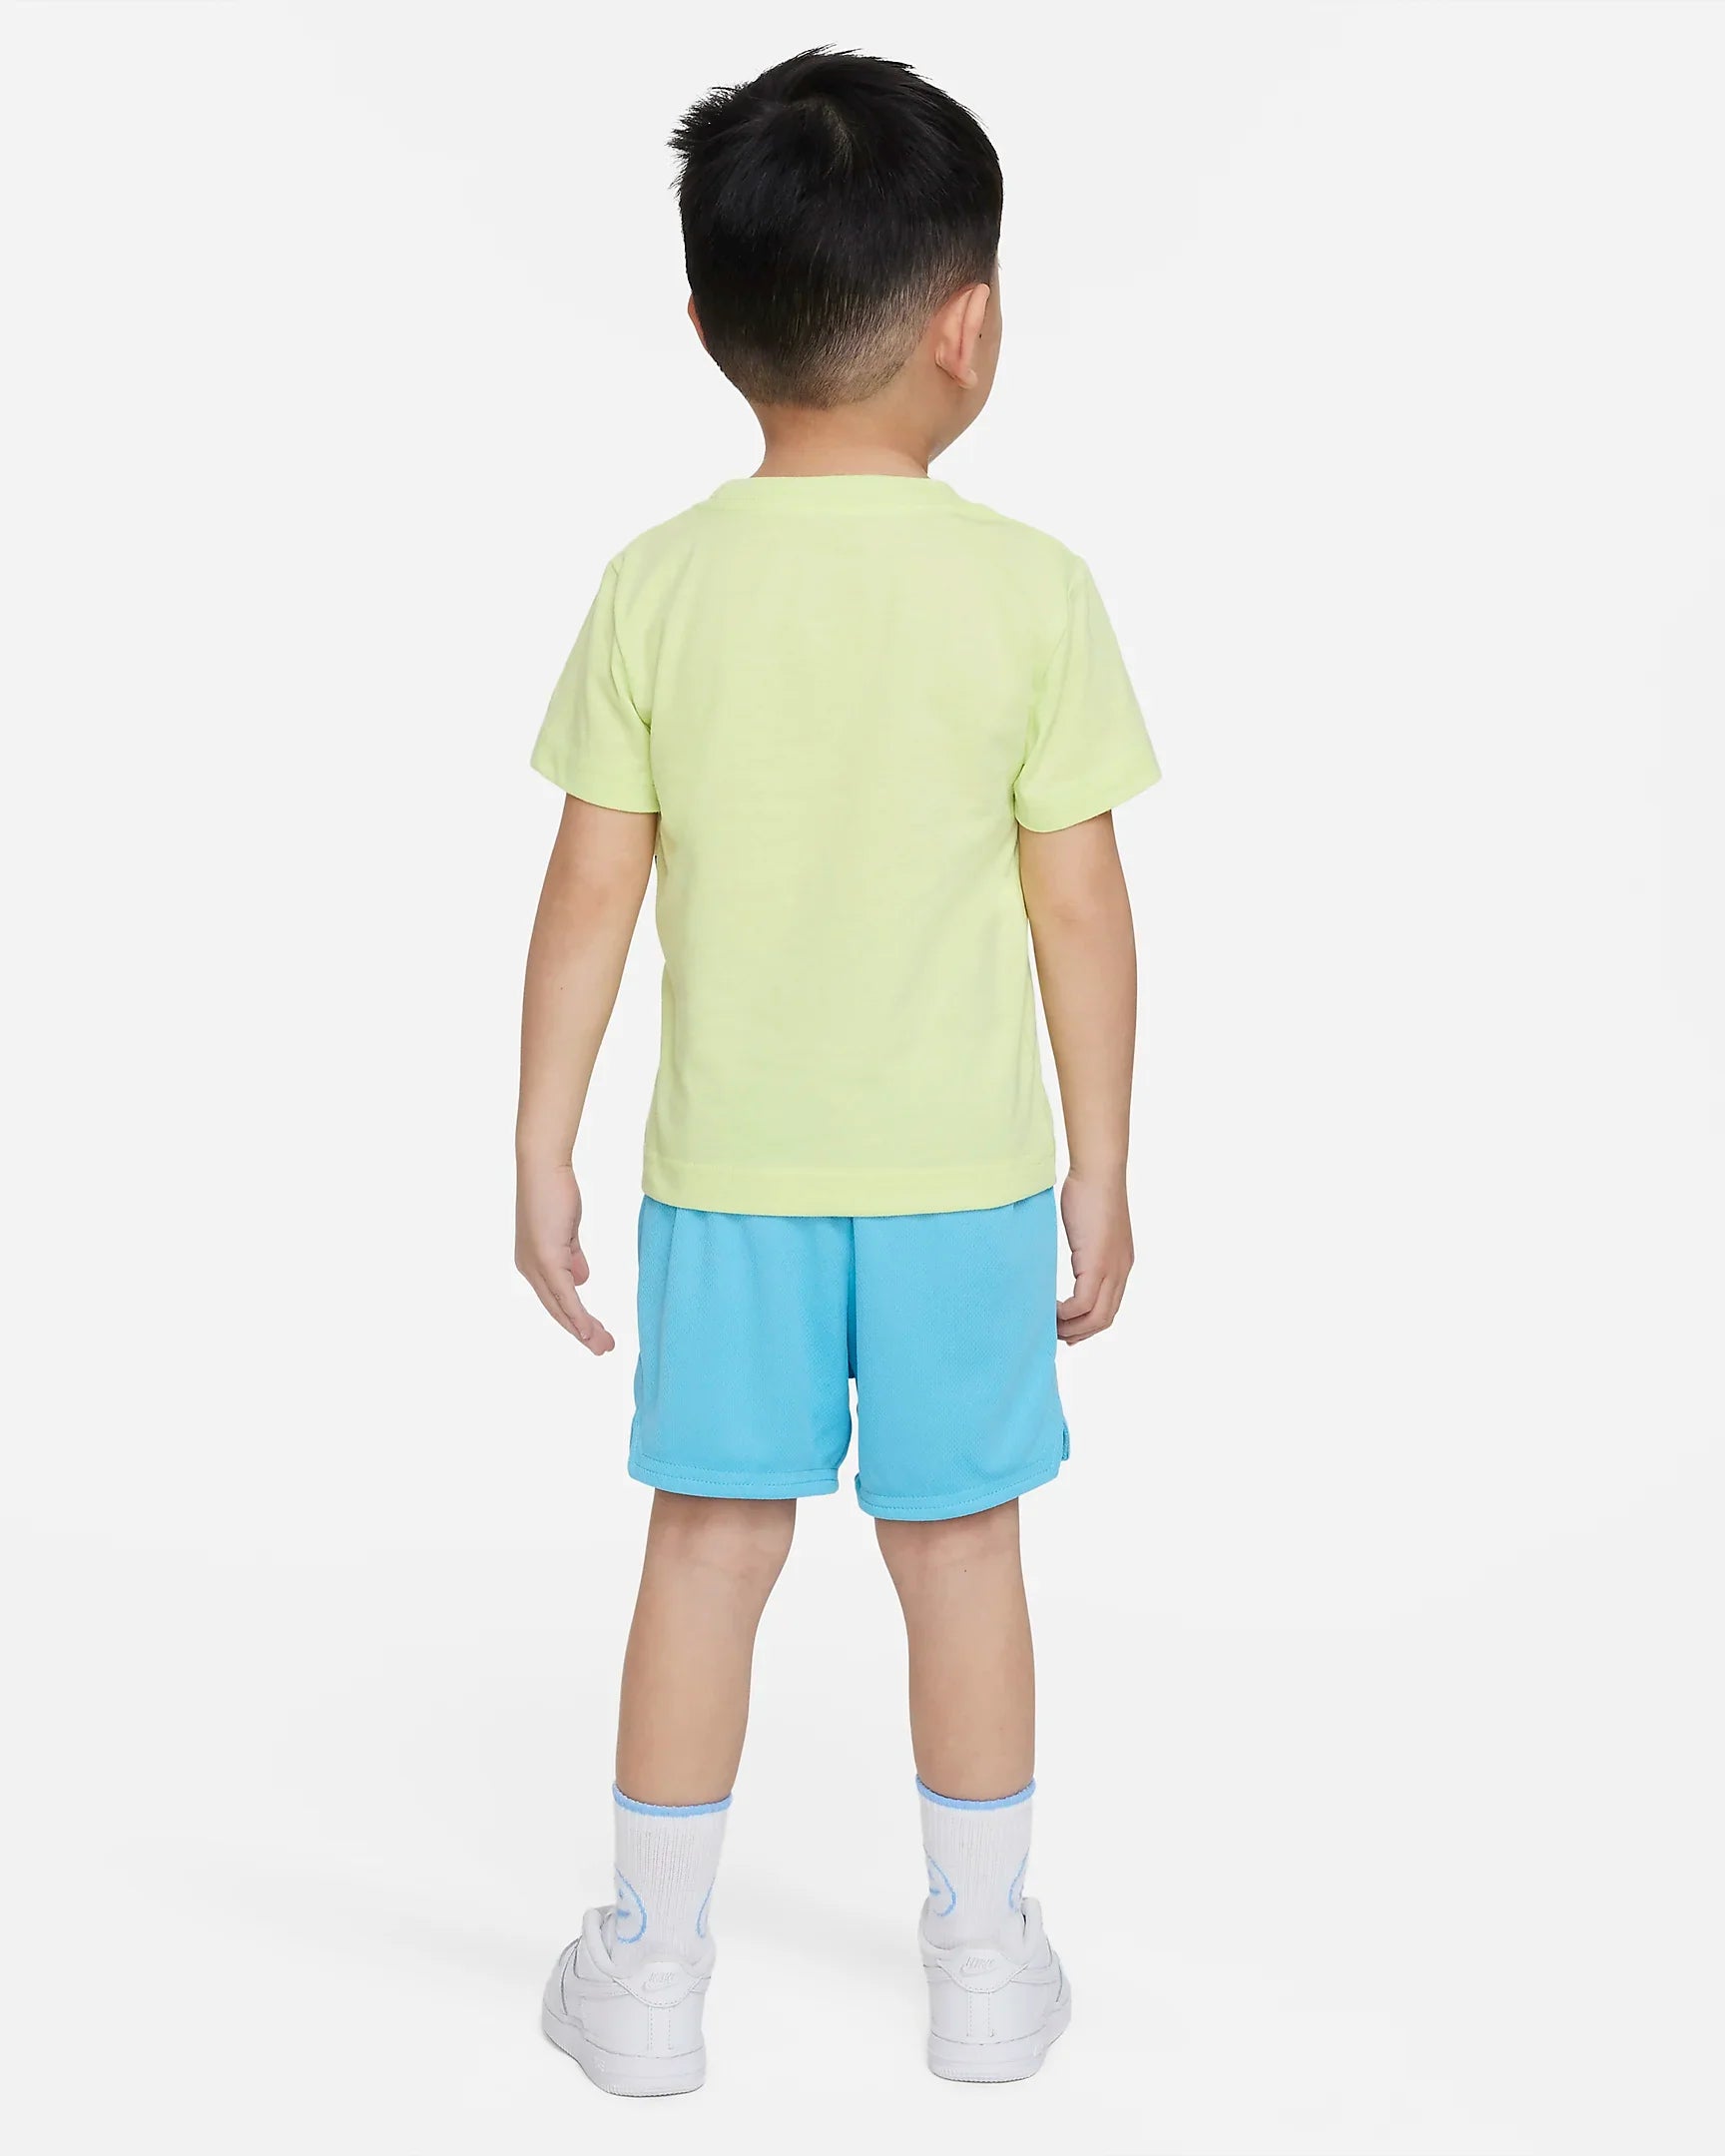 Boys Air T-Shirt Short Set